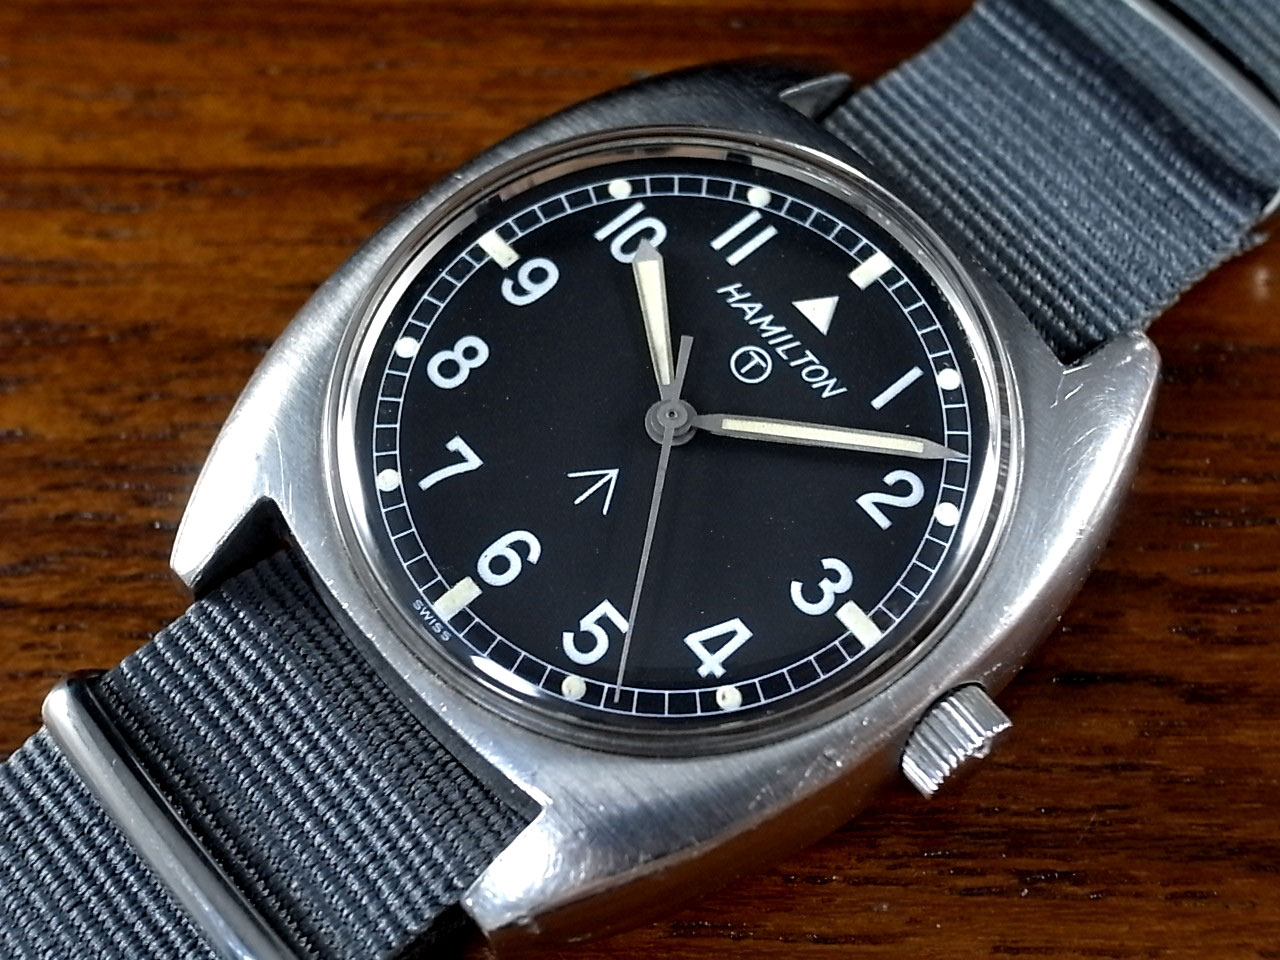 部分OH実施して精度調整HAMILTON ハミルトン　軍用　1970 USA メンズ　腕時計　ウォッチ